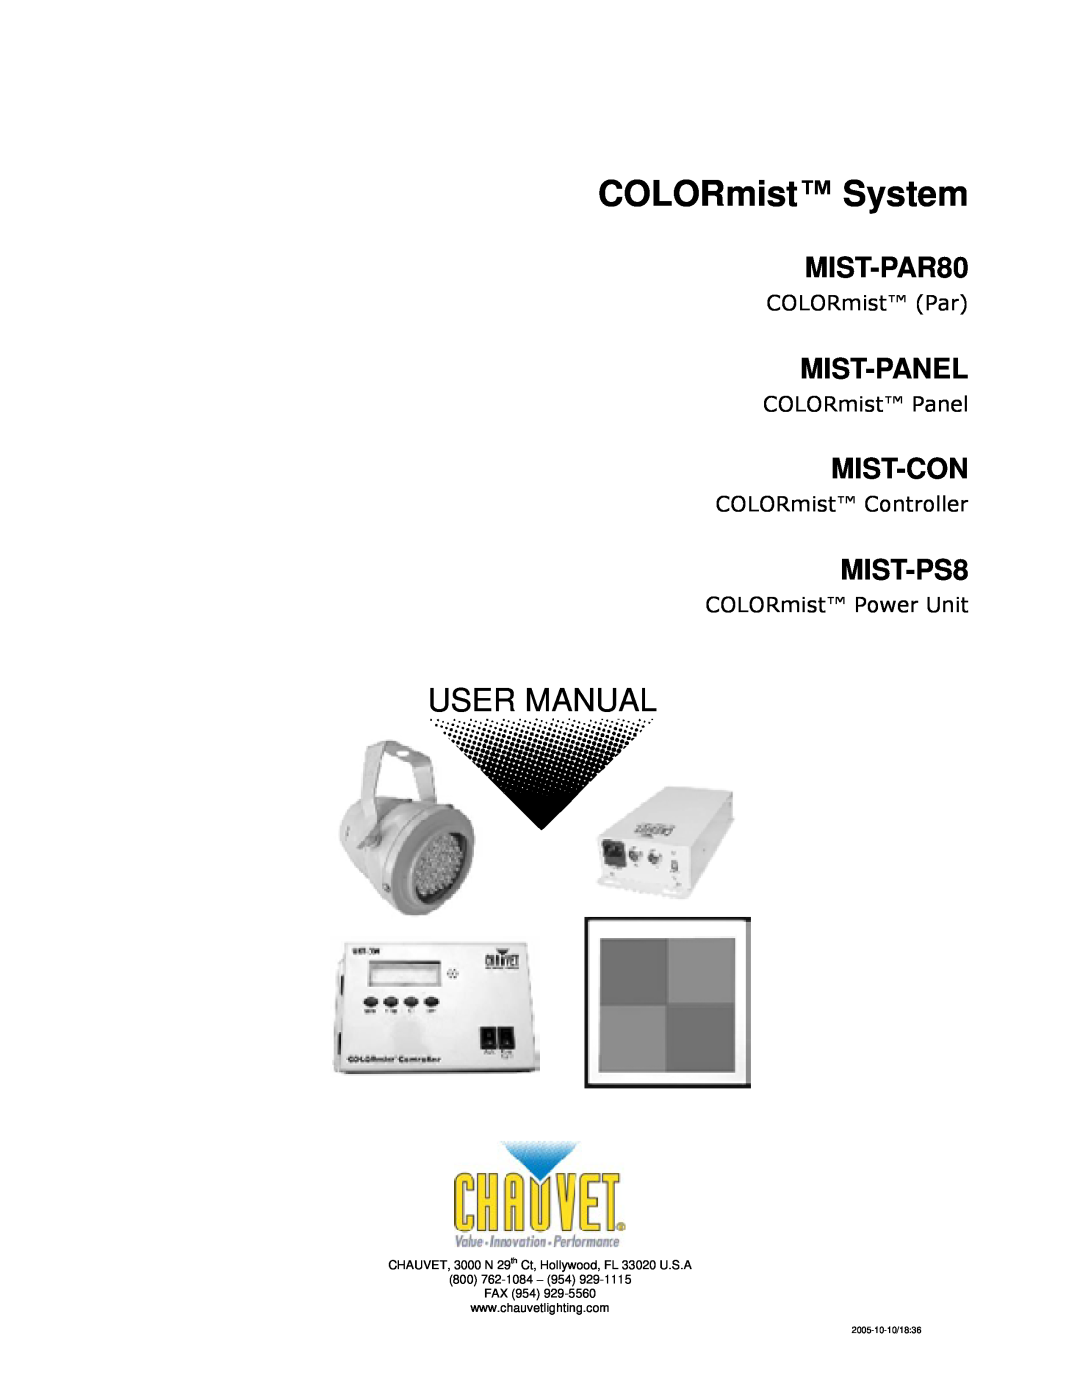 Chauvet MIST-PS8, MIST-CON user manual COLORmist System, MIST-PAR80, Mist-Panel, Mist-Con, COLORmist Par, COLORmist Panel 